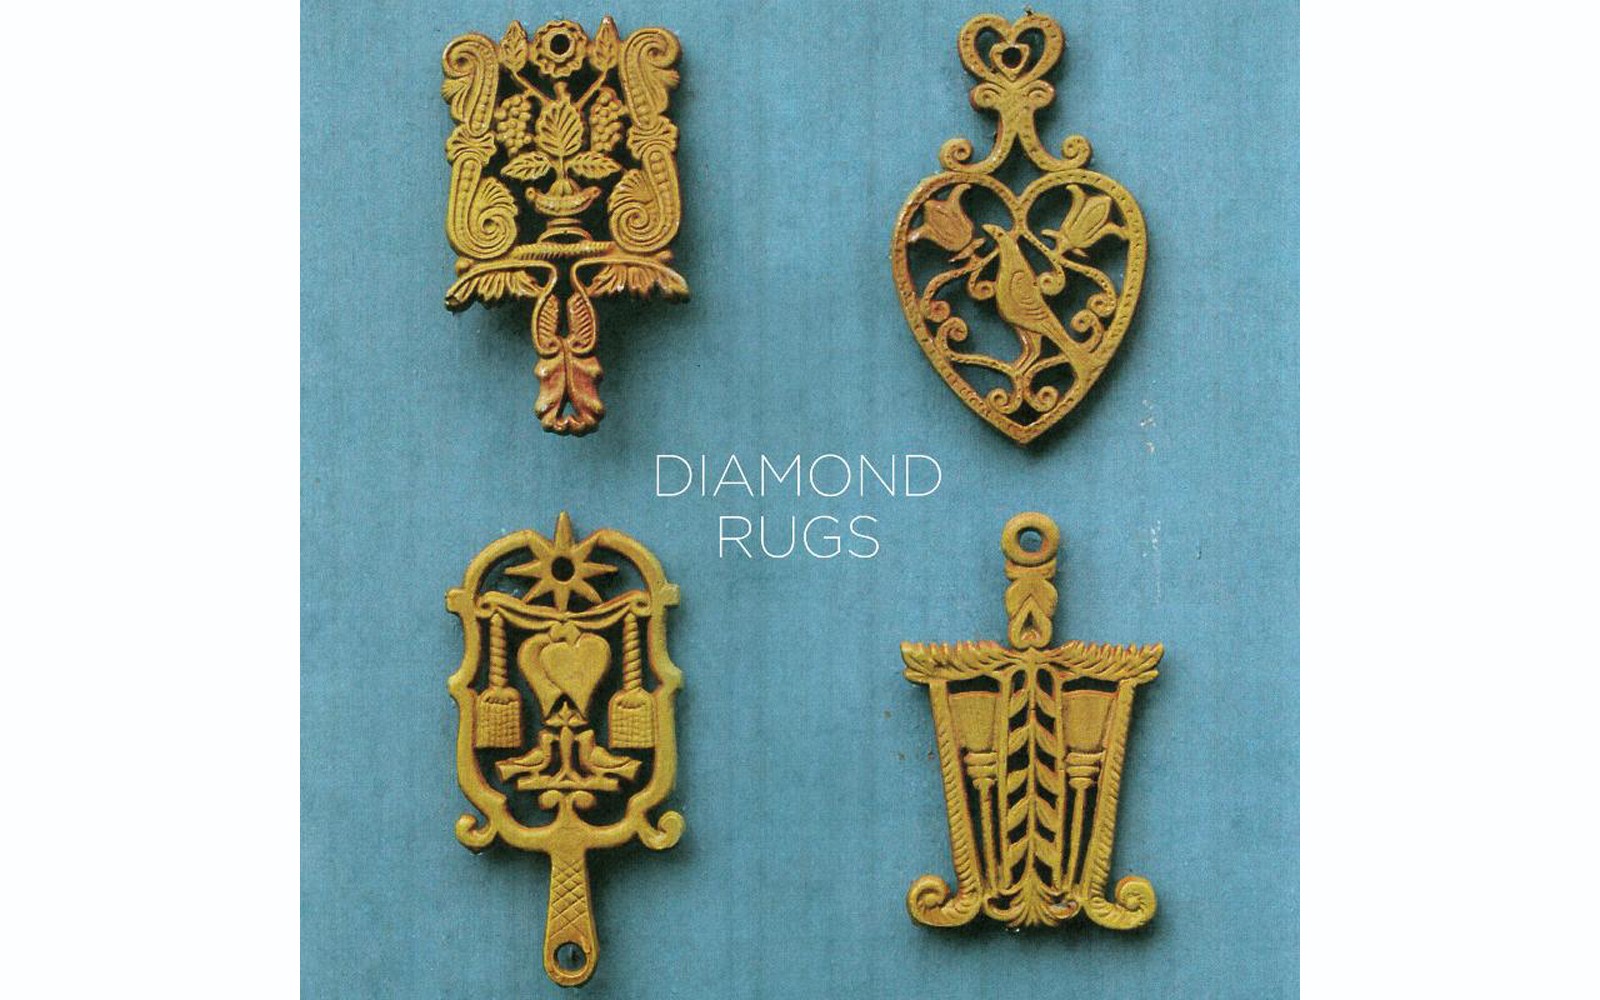 Diamond Rugs - BY DIAMOND RUGS - PARTISAN RECORDS